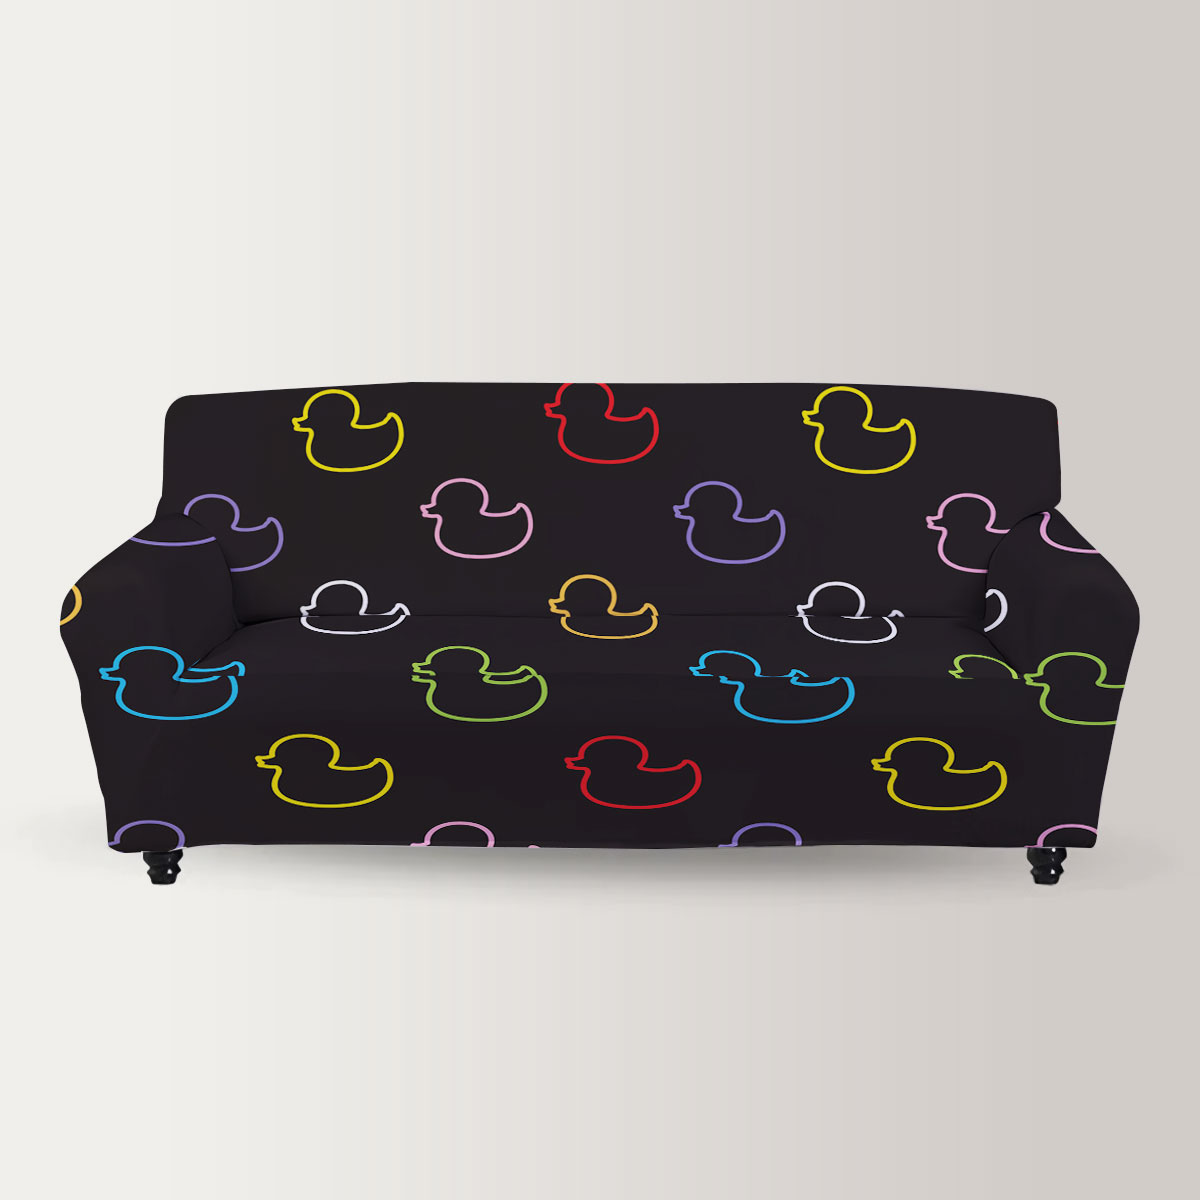 Colors Pop Art Duck Sofa Cover